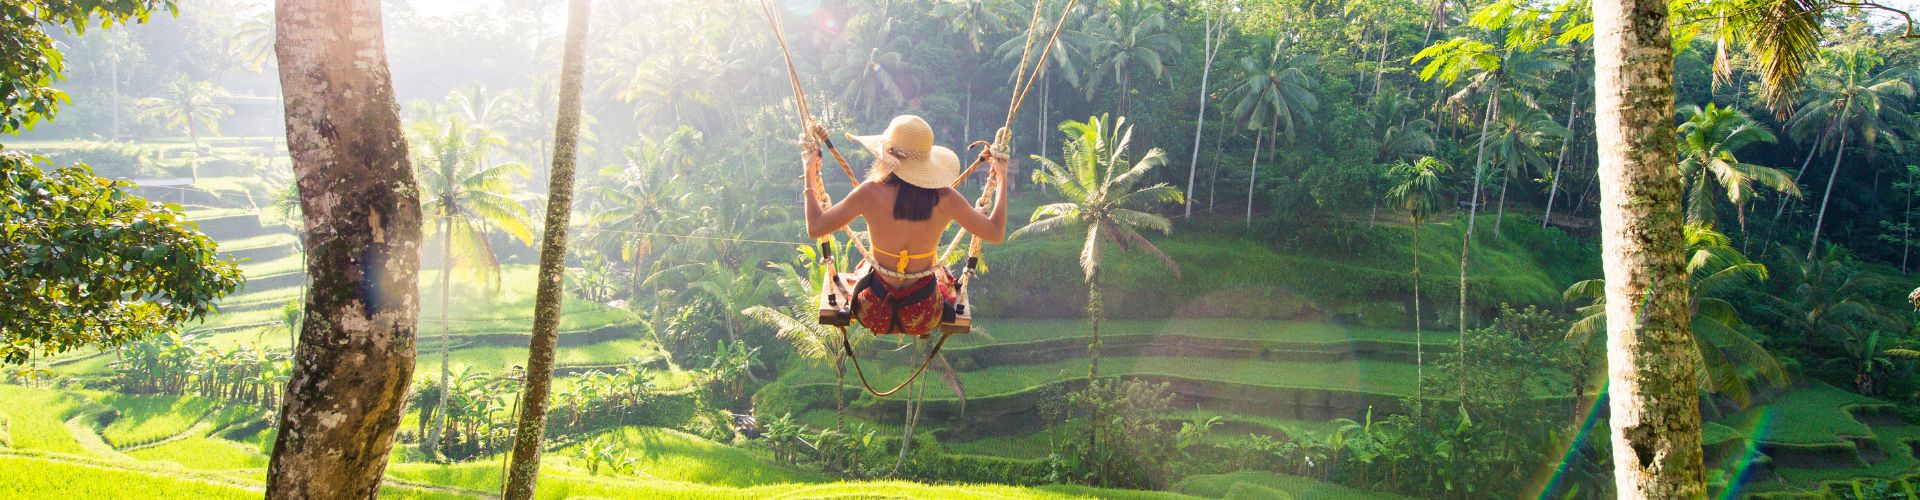 Die Top 10 Dinge, die Sie wissen müssen, bevor Sie nach Bali reisen